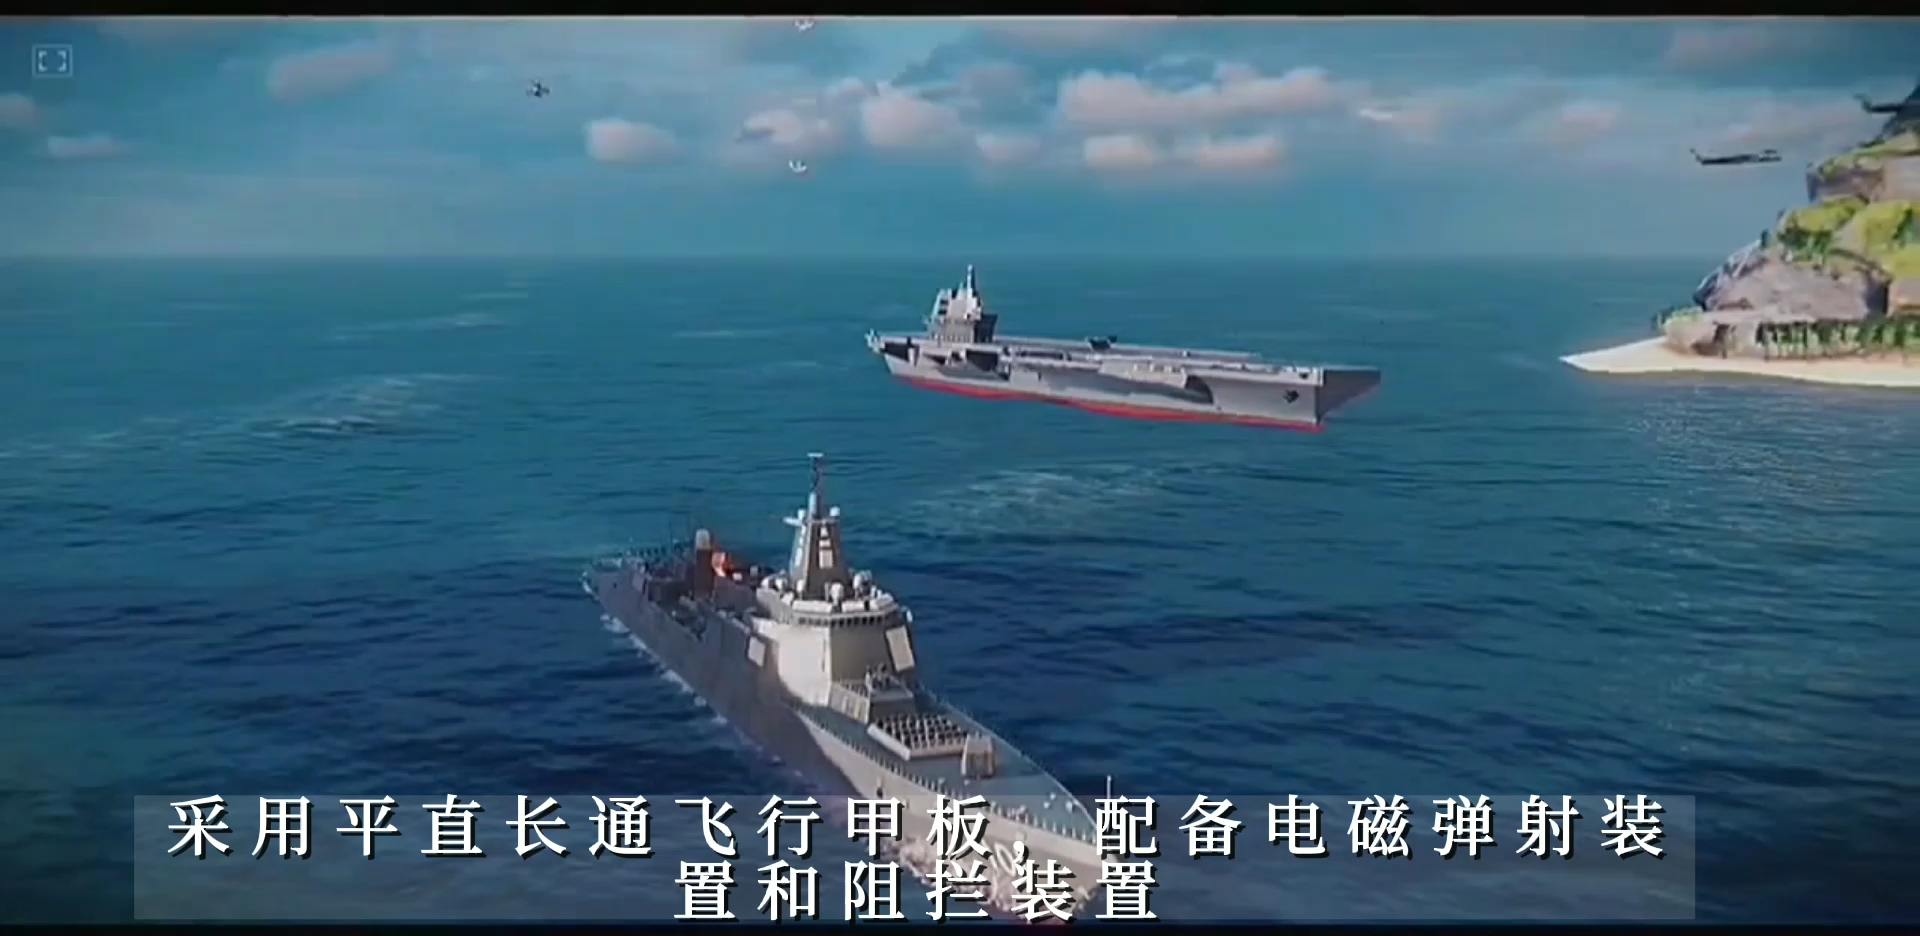 中国正式迈入三航母时代 央视播福建舰震撼画面